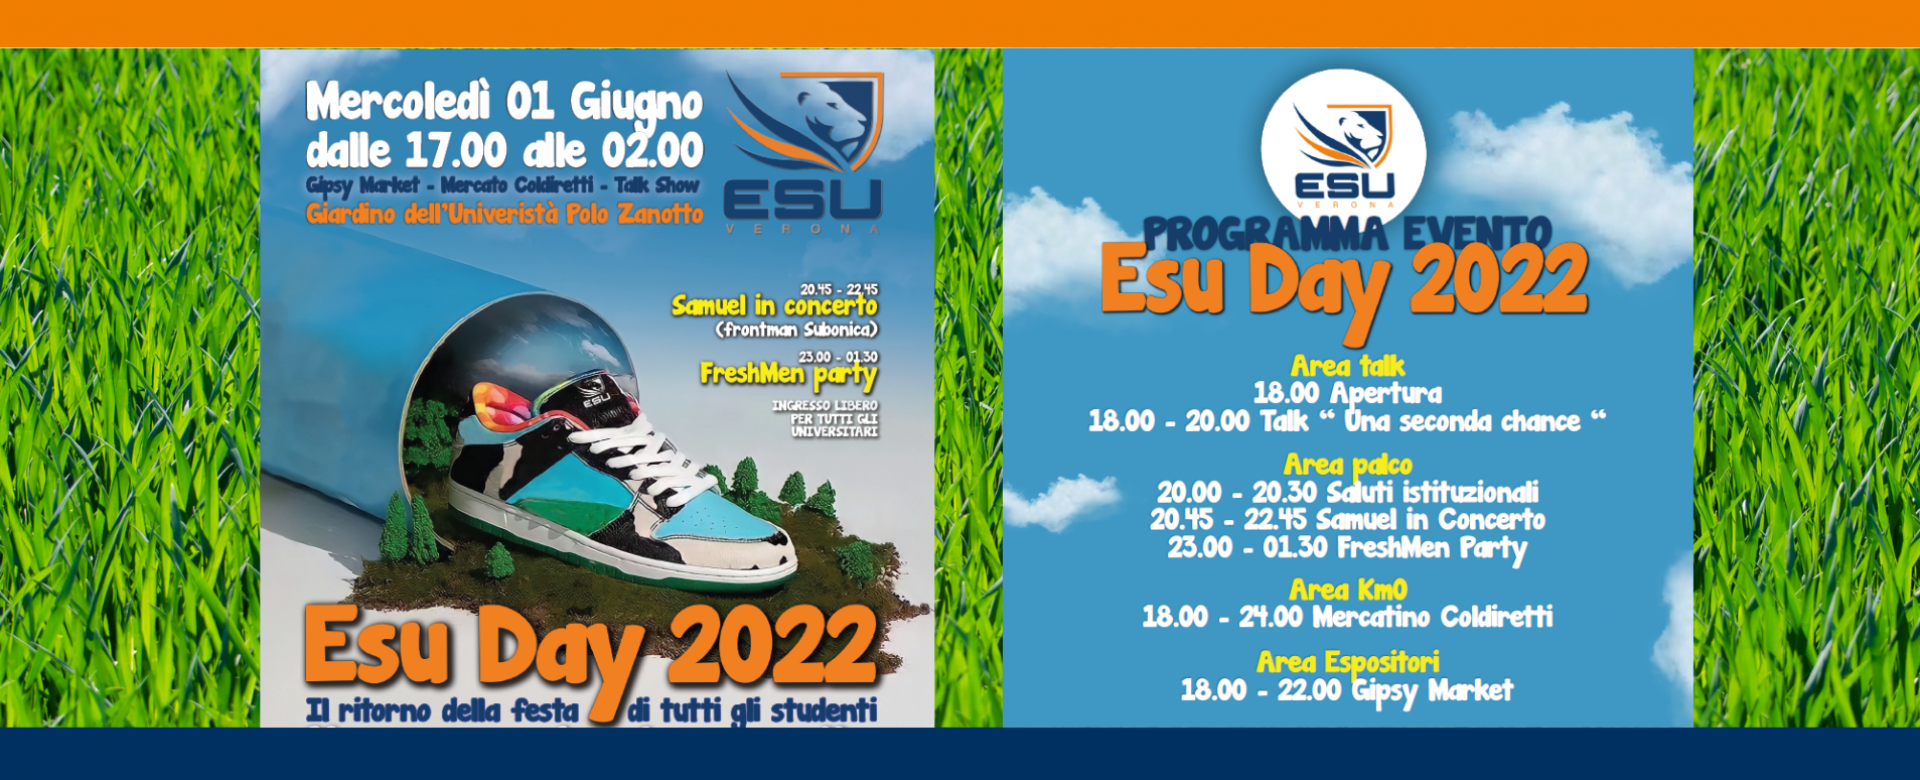 24.05.2022 - ESU day 2022